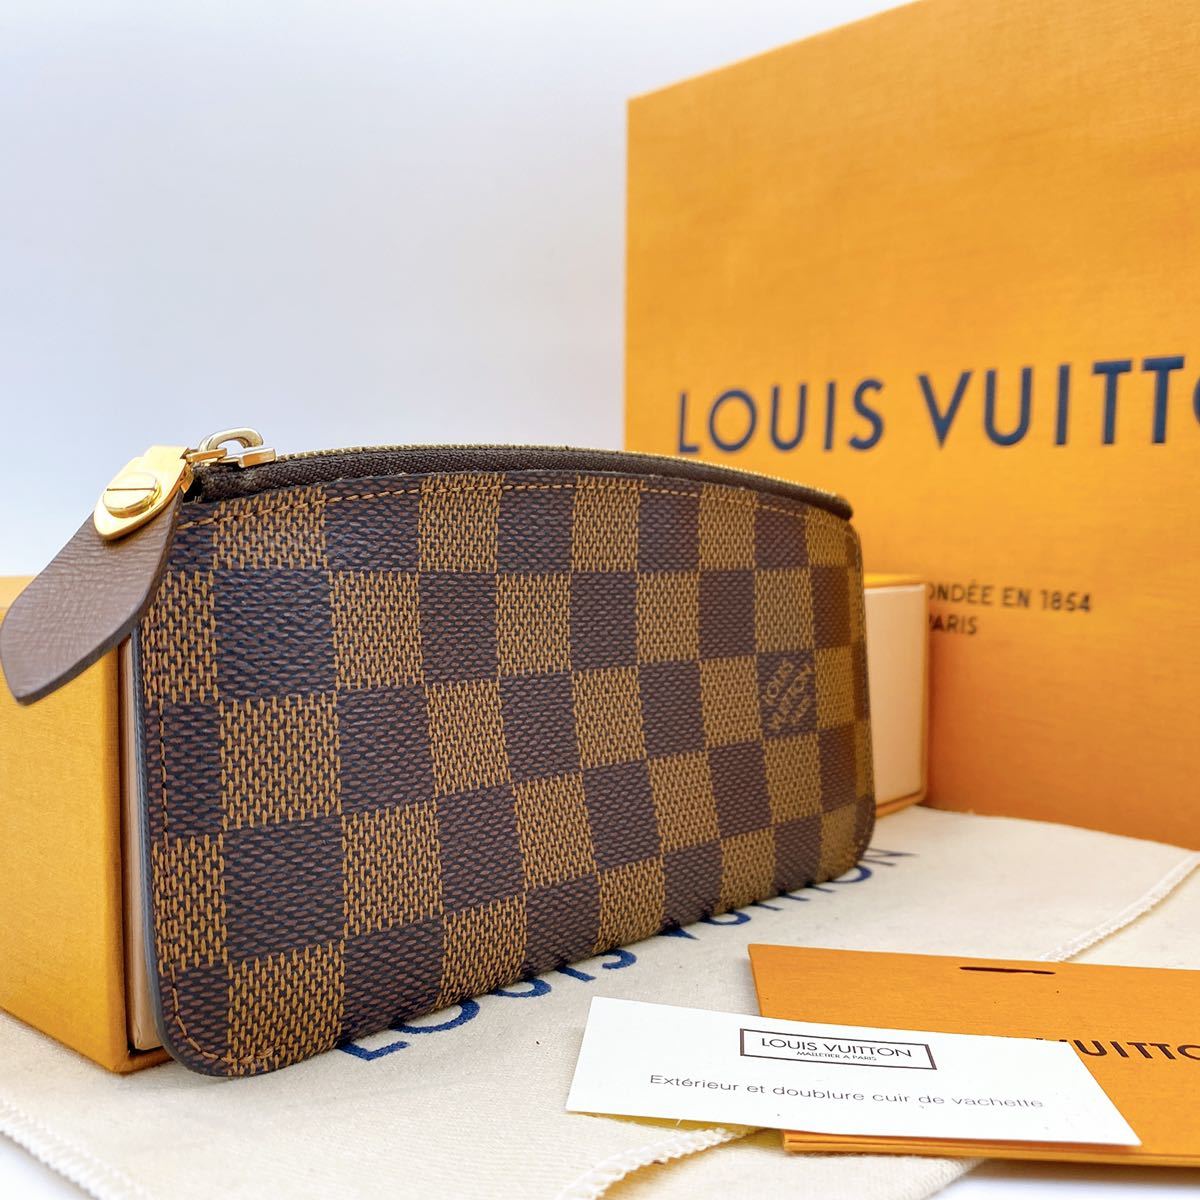 購入超安い  美品‼︎ Viitton Louis ハンドバッグ